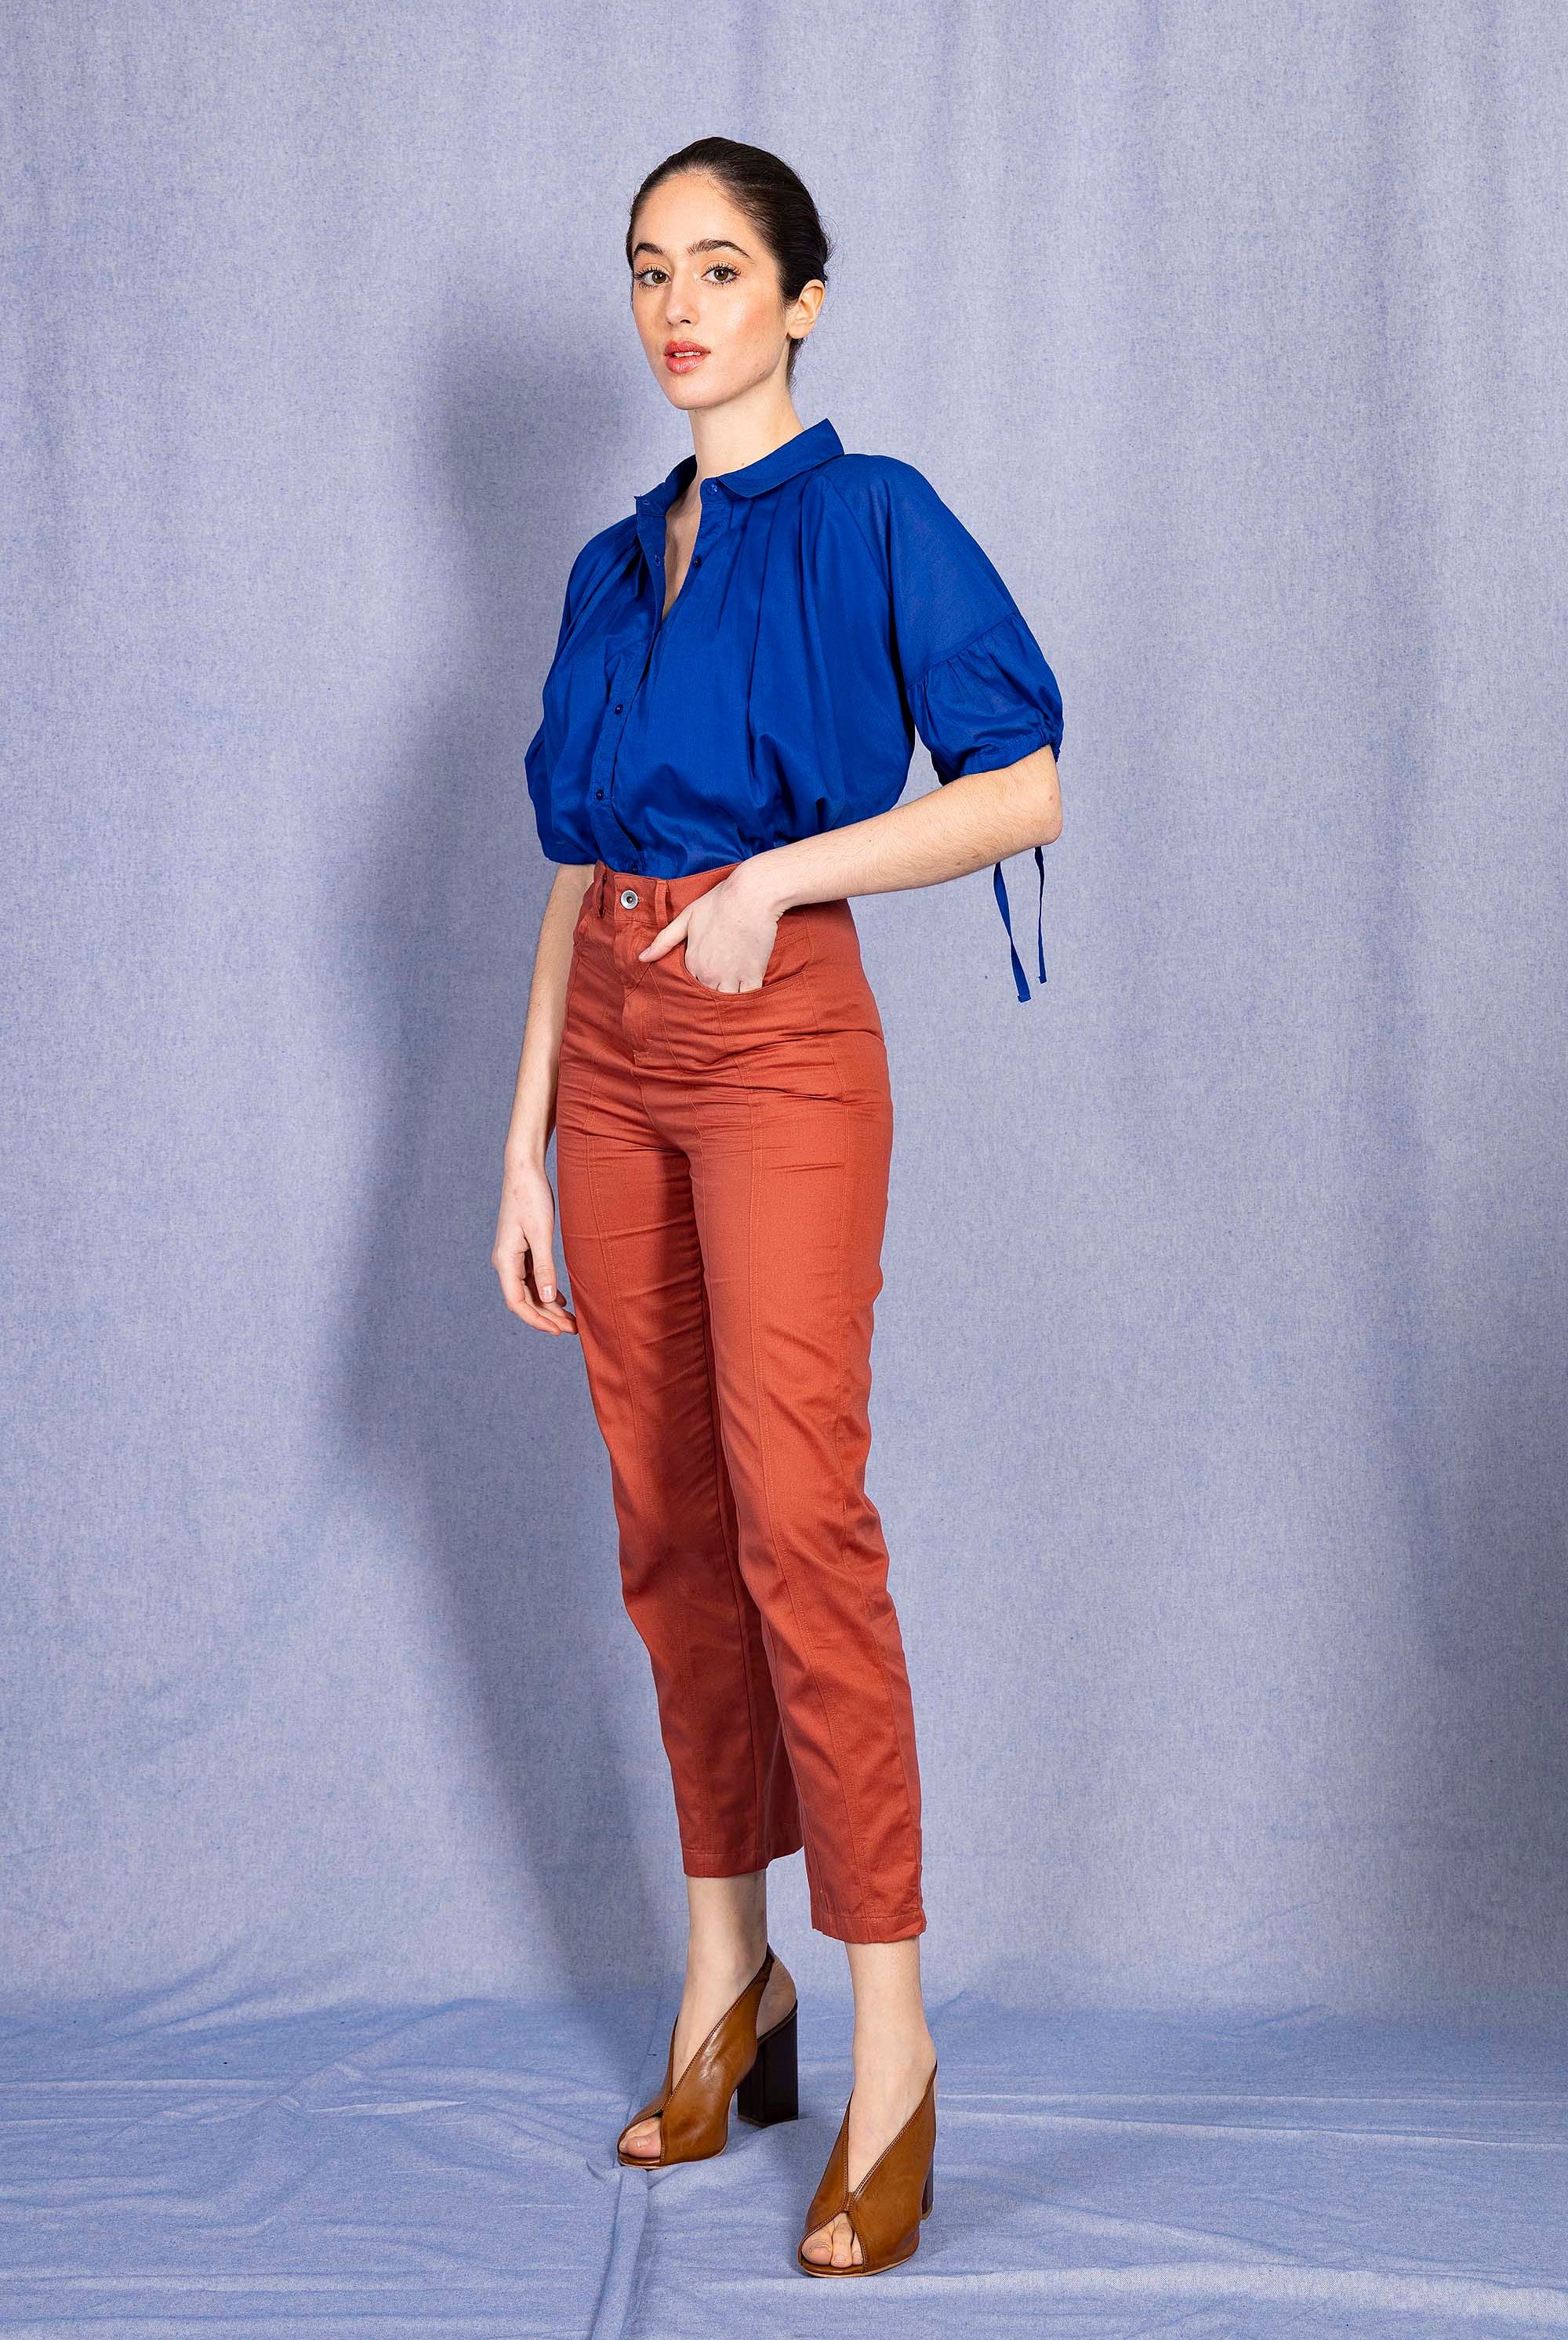 Chemise Nuria Bleu Saphir chemise Misericordia, librement inspirée de différents univers